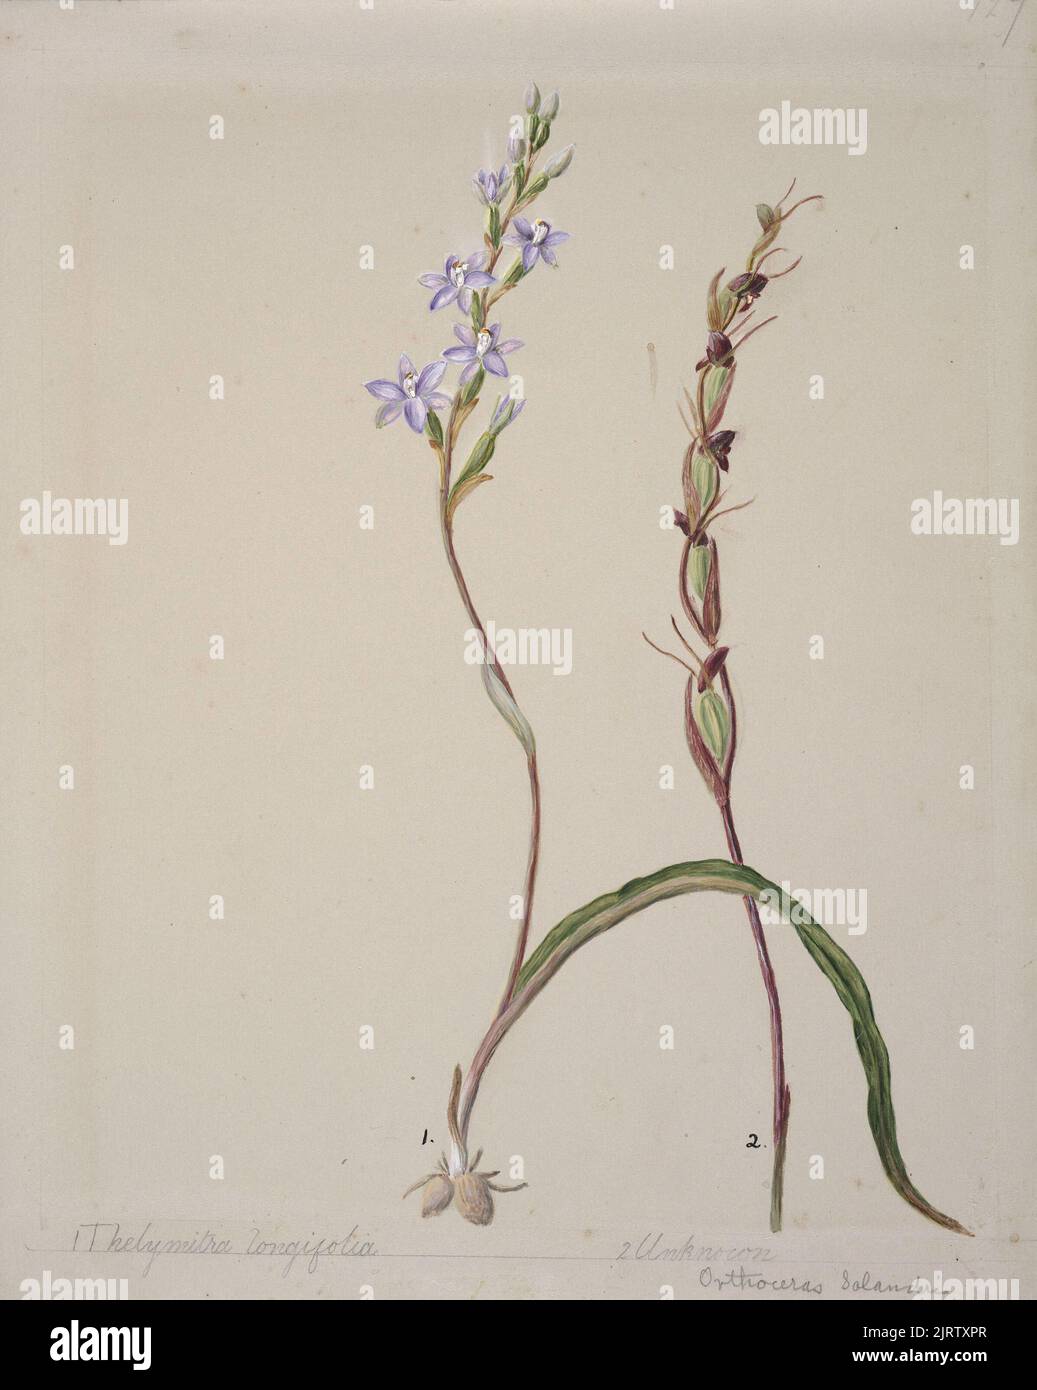 [Thelymitra longifolia], circa 1885, New Zealand, by Sarah Featon. Stock Photo